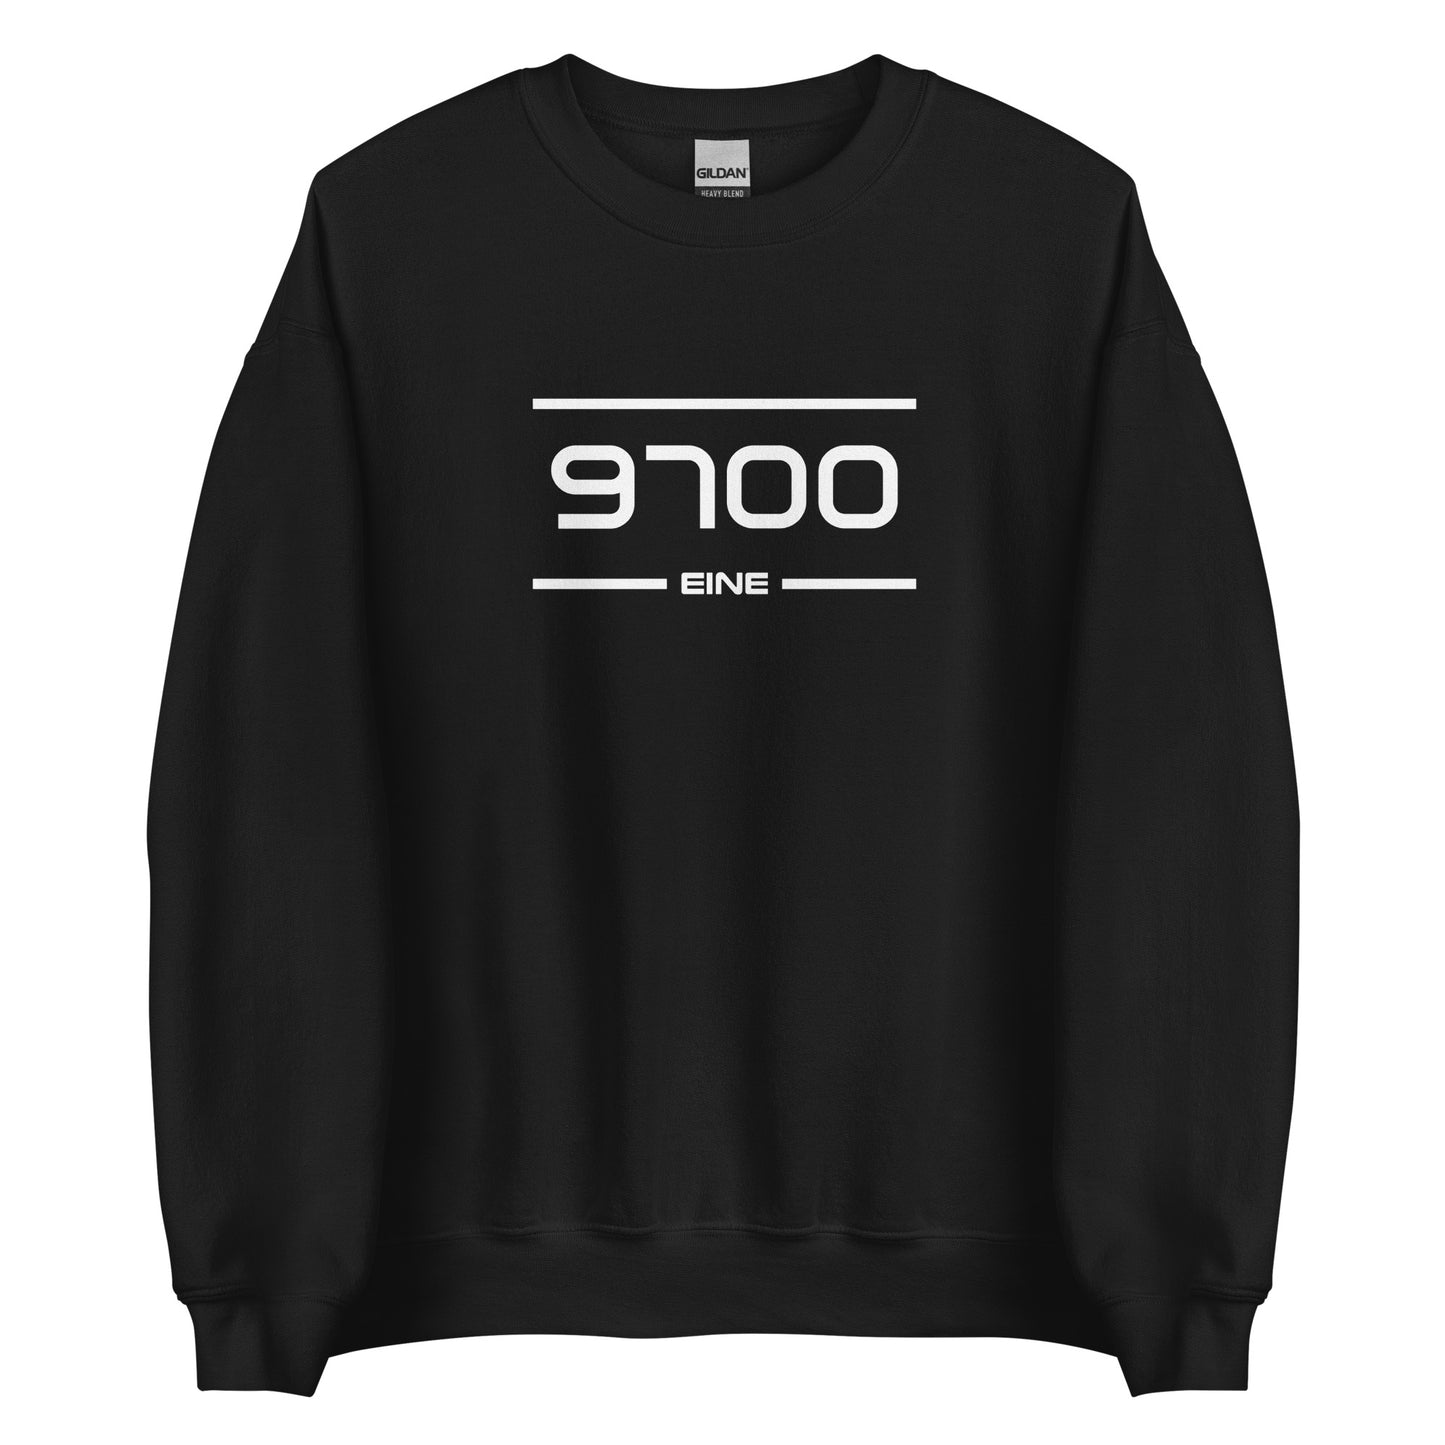 Sweater - 9700 - Eine (M/V)